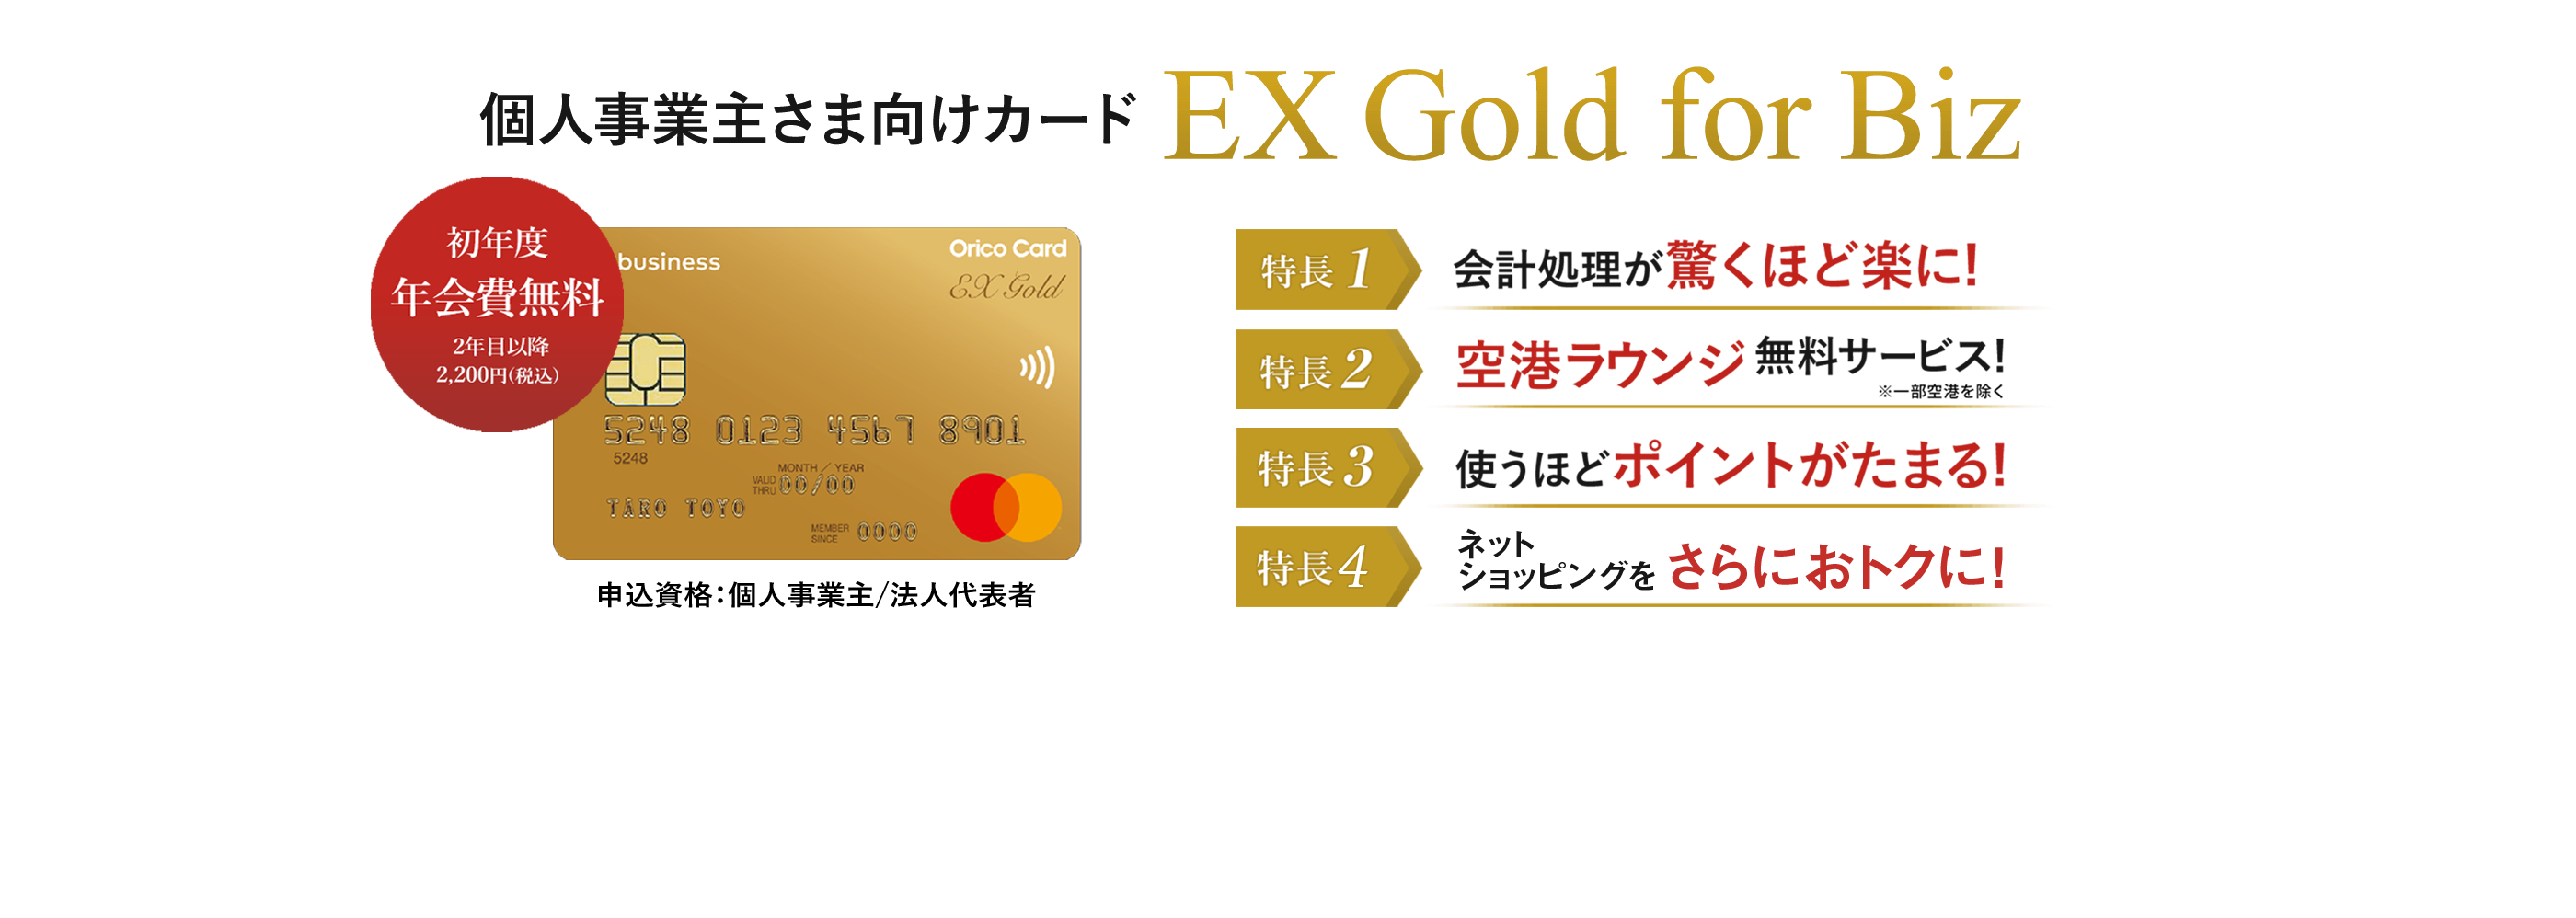 オリコのビジネスカード EX Gold for Biz